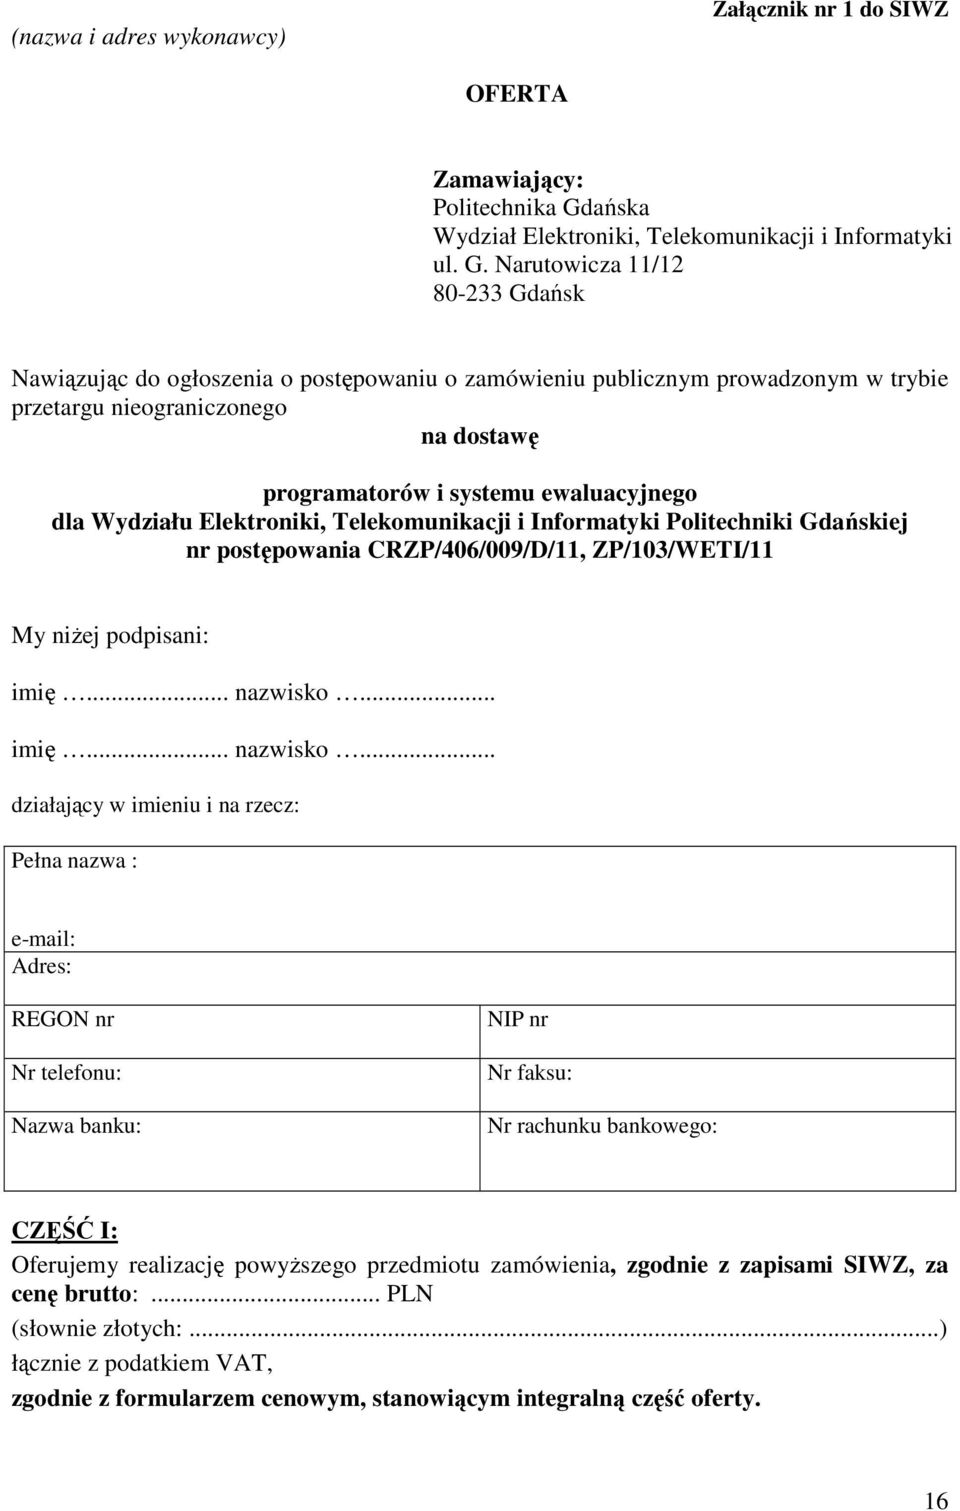 Narutowicza 11/12 80-233 Gdańsk Nawiązując do ogłoszenia o postępowaniu o zamówieniu publicznym prowadzonym w trybie przetargu nieograniczonego na dostawę programatorów i systemu ewaluacyjnego dla